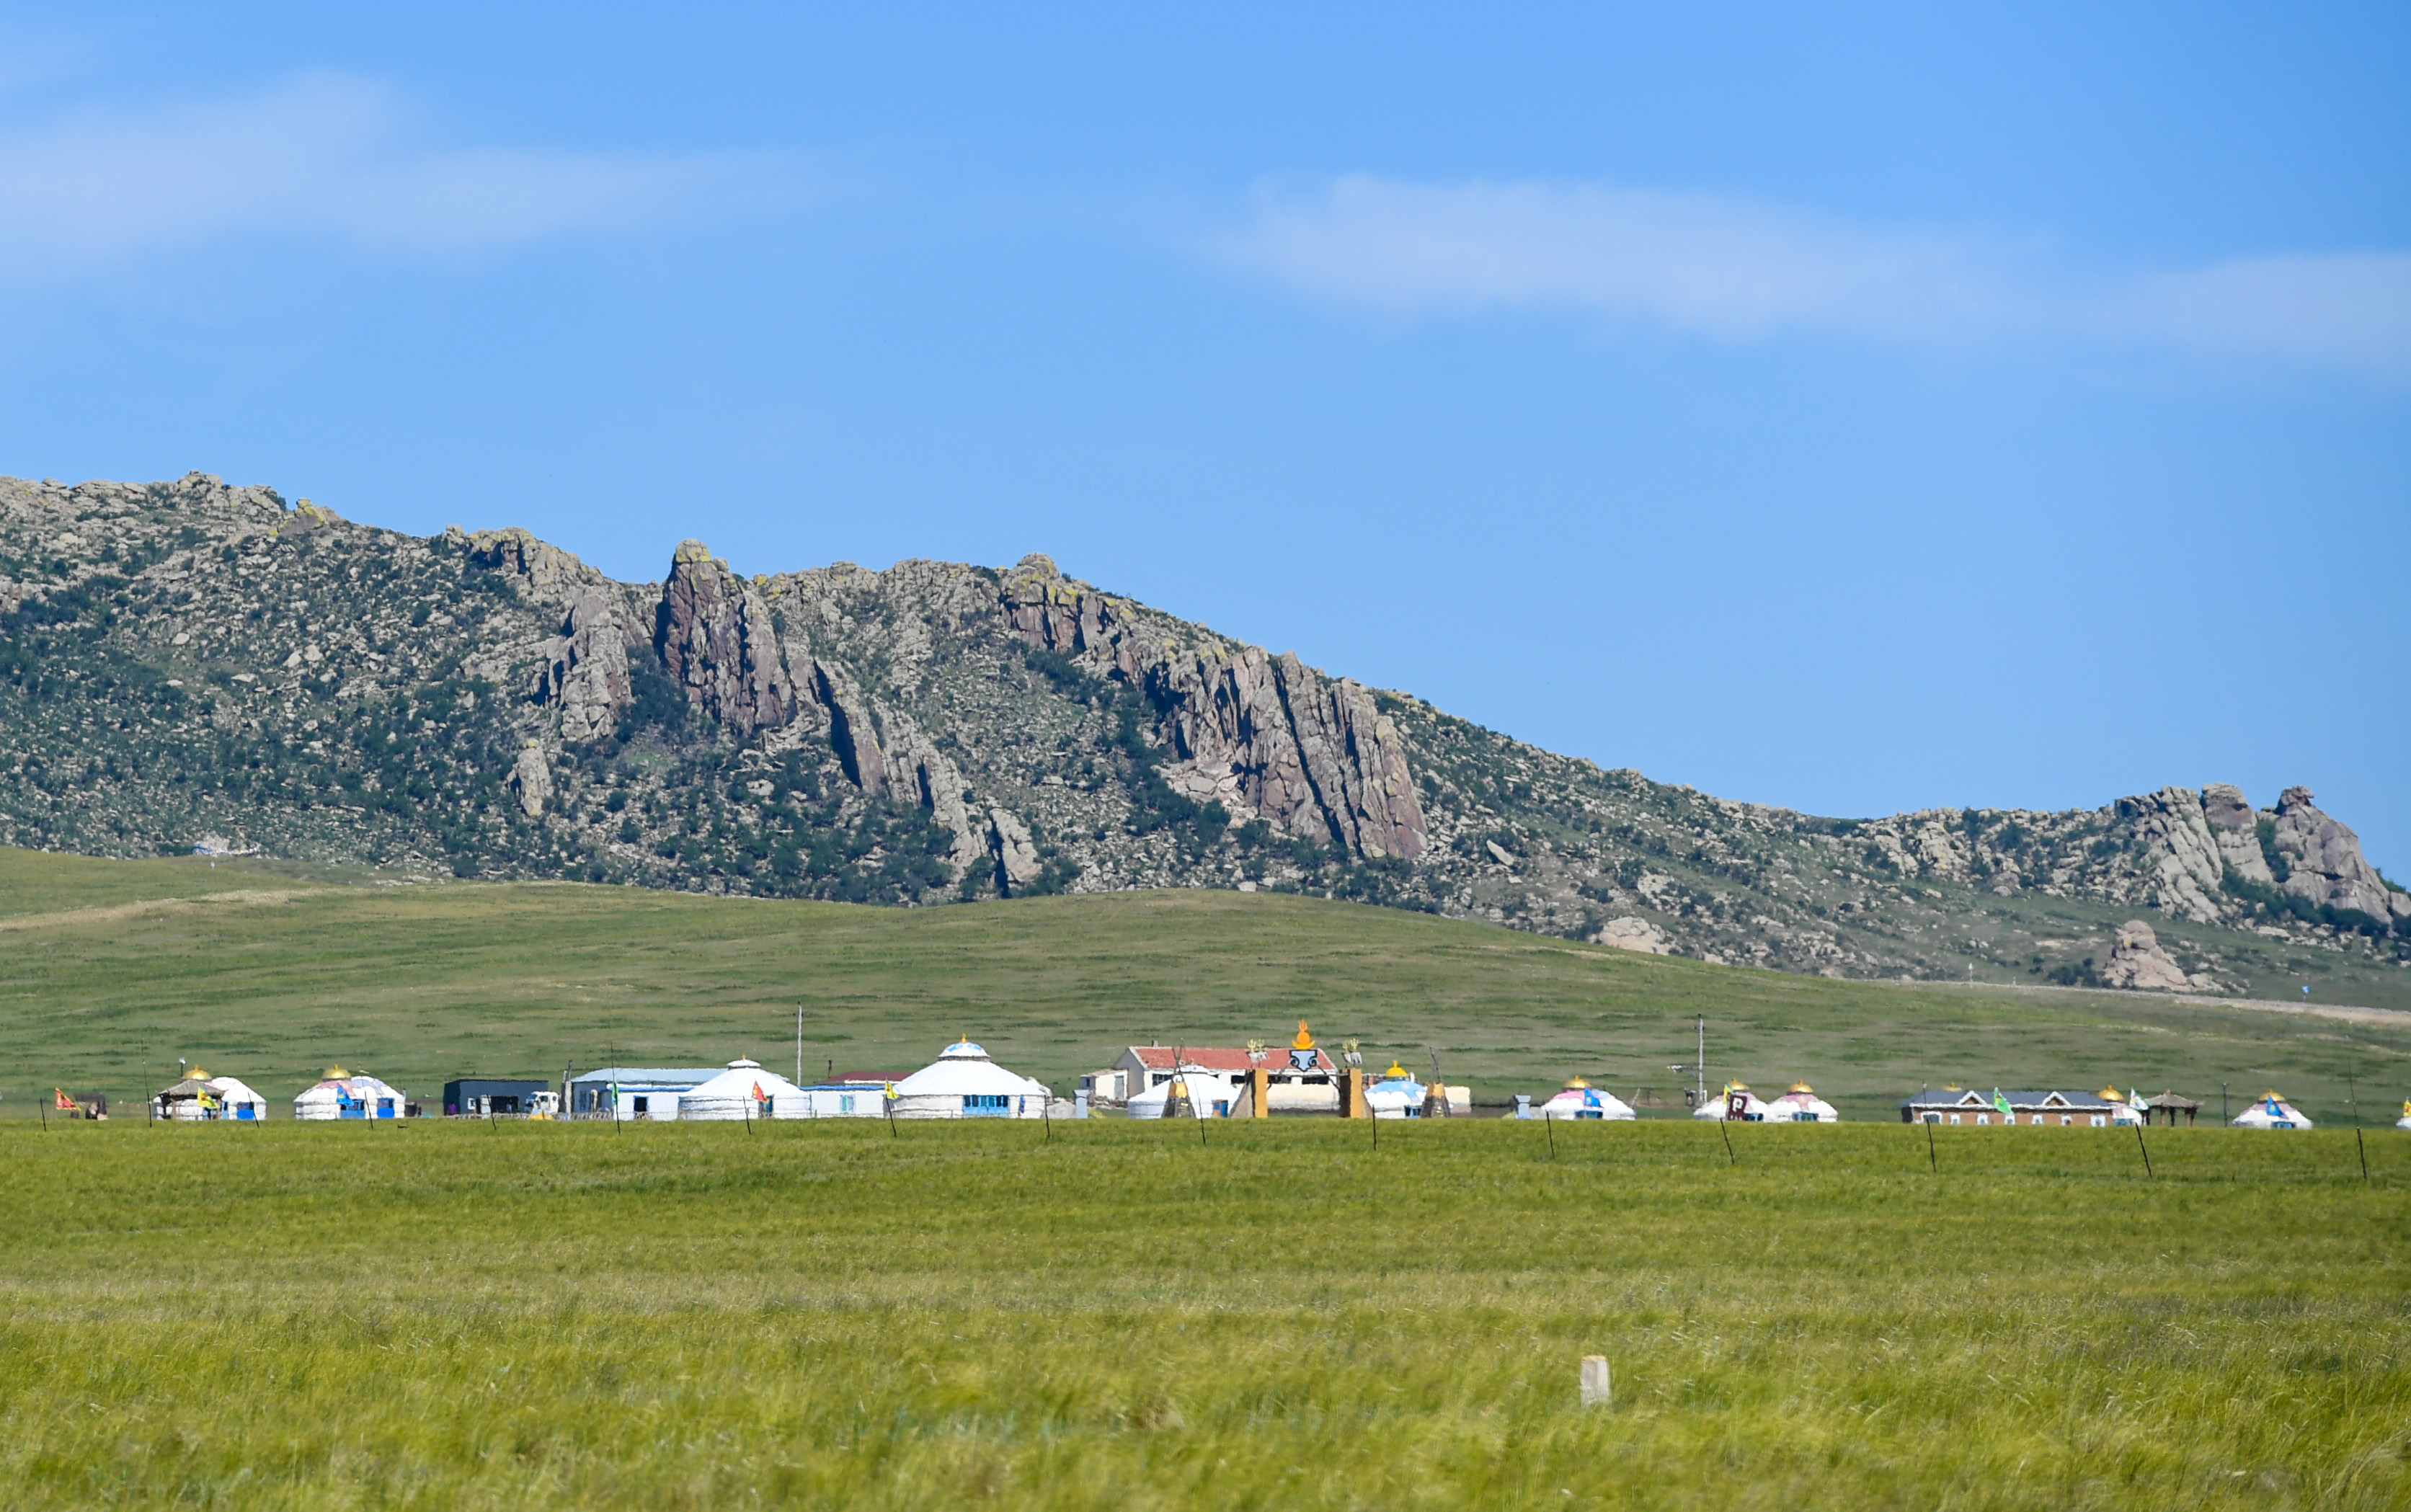 立秋过后,内蒙古锡林郭勒盟东乌珠穆沁旗境内的草原展现出独特的壮阔